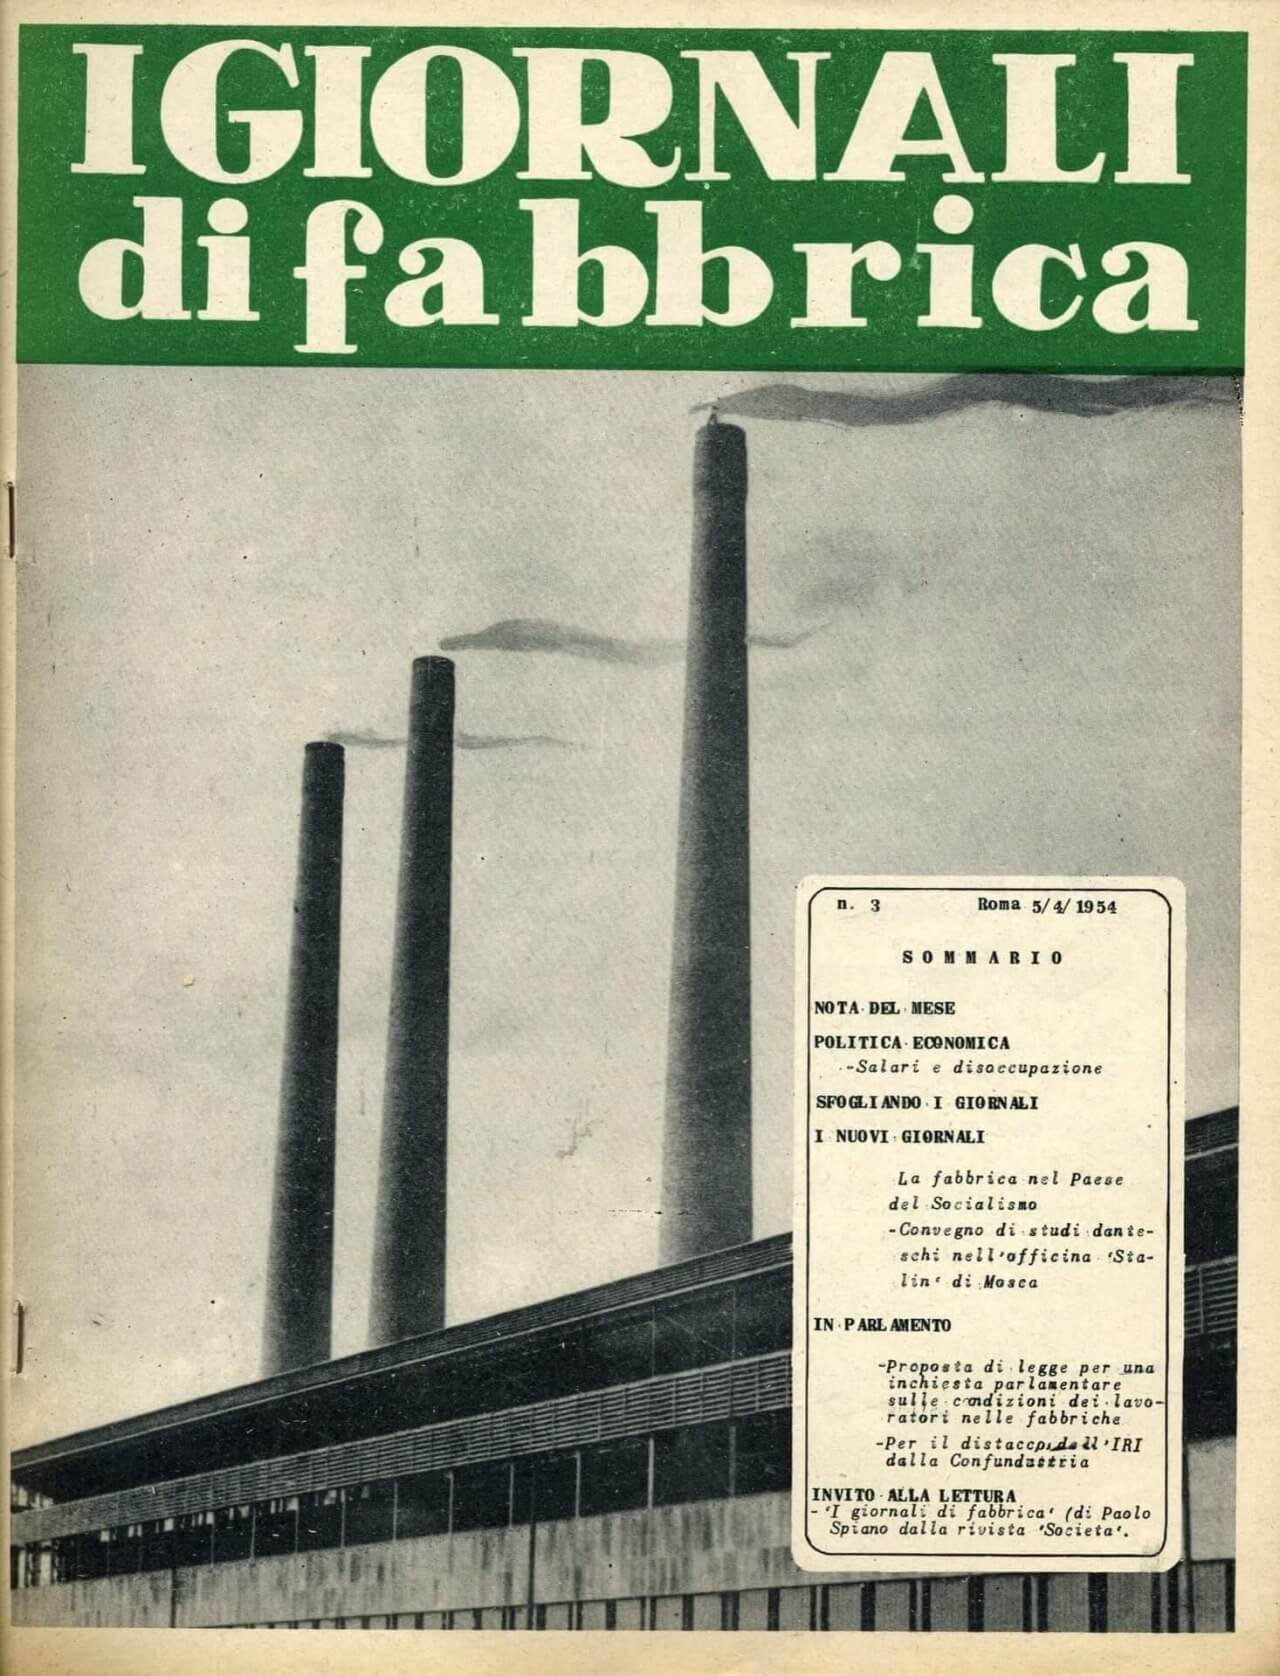 1954, I giornali di fabbrica - Giornale di fabbrica